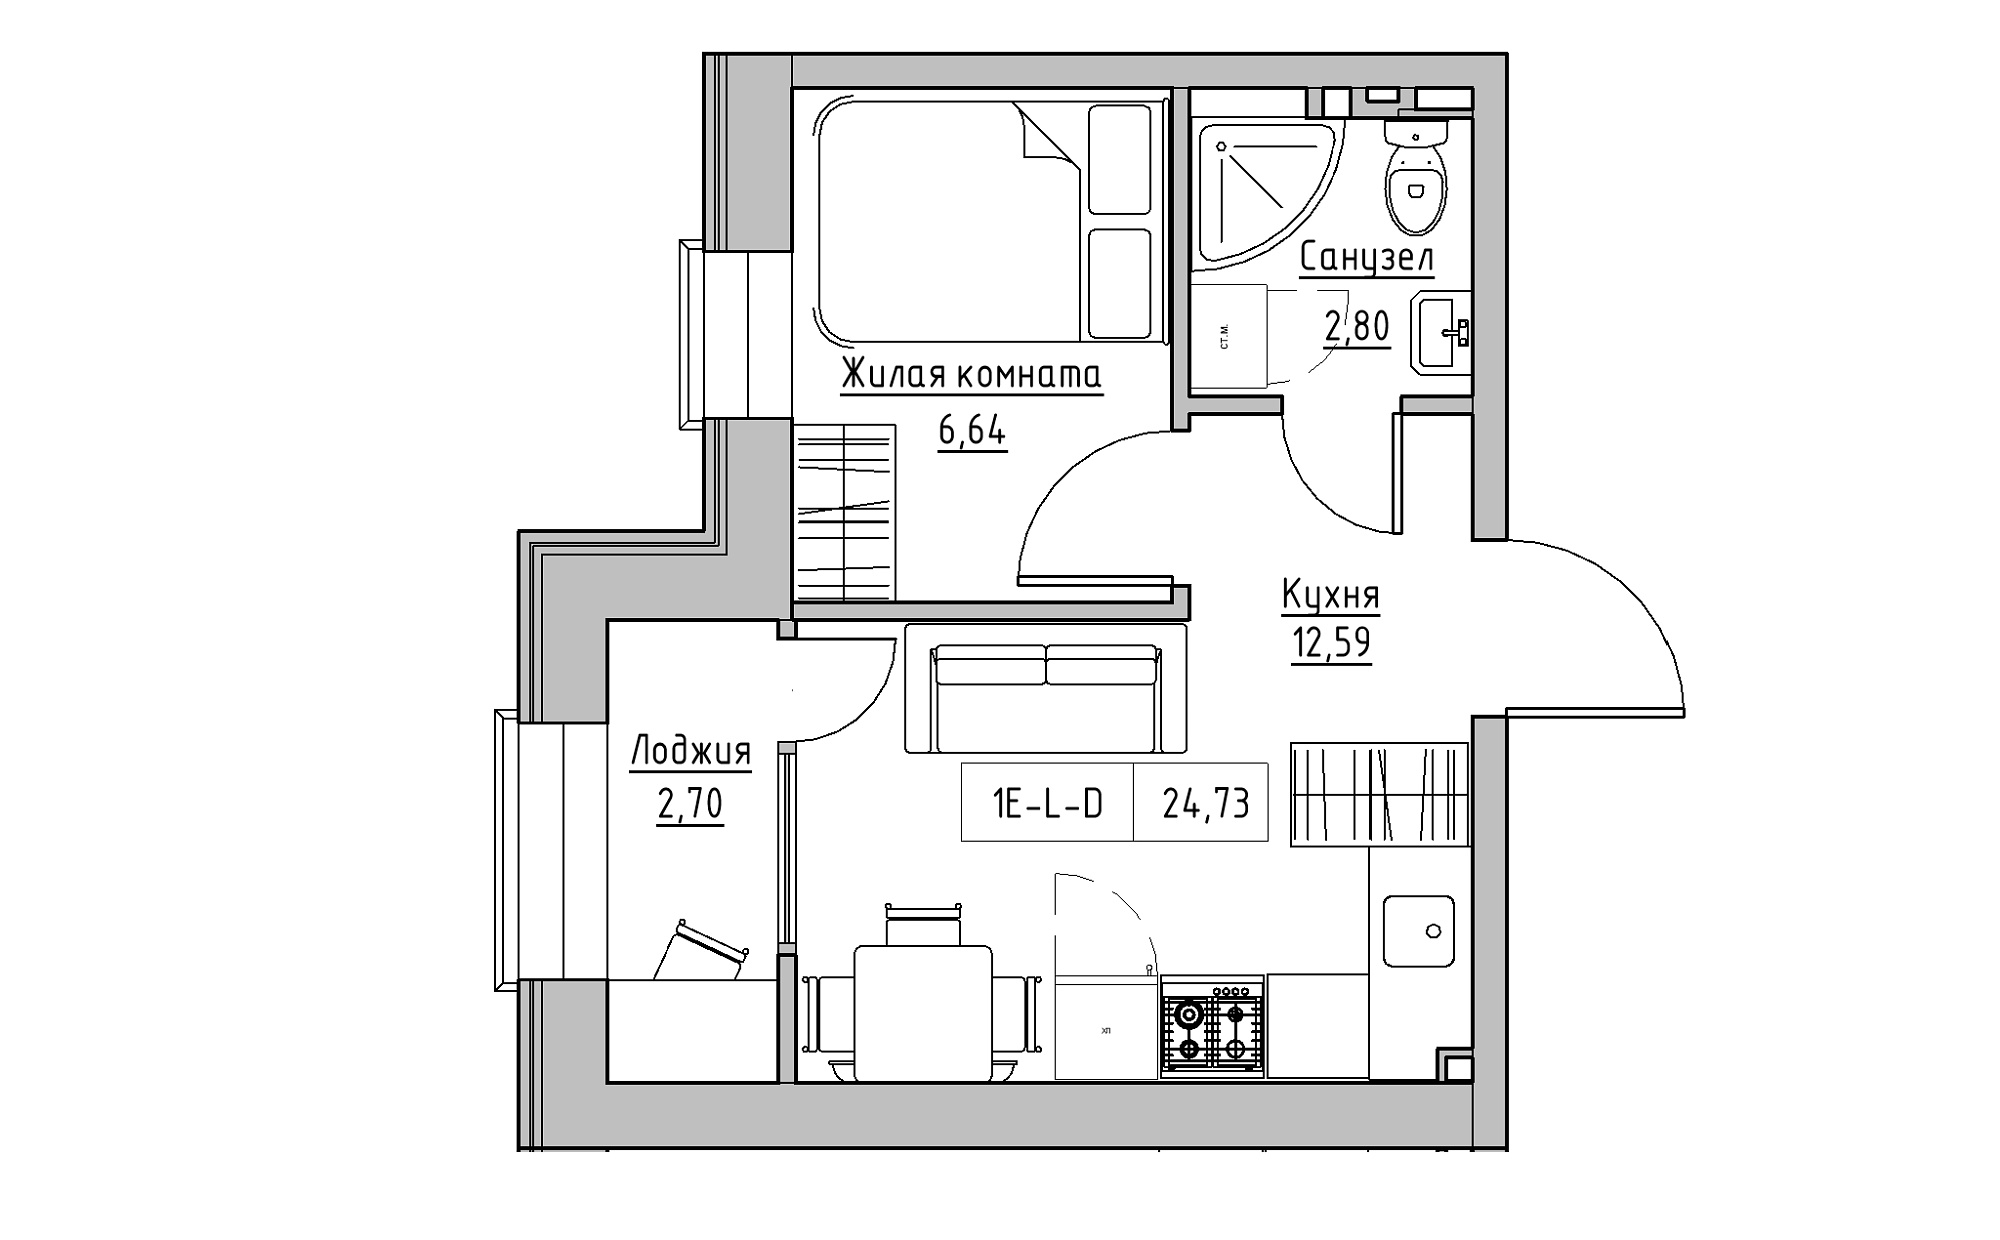 Планировка 1-к квартира площей 24.73м2, KS-022-01/0013.